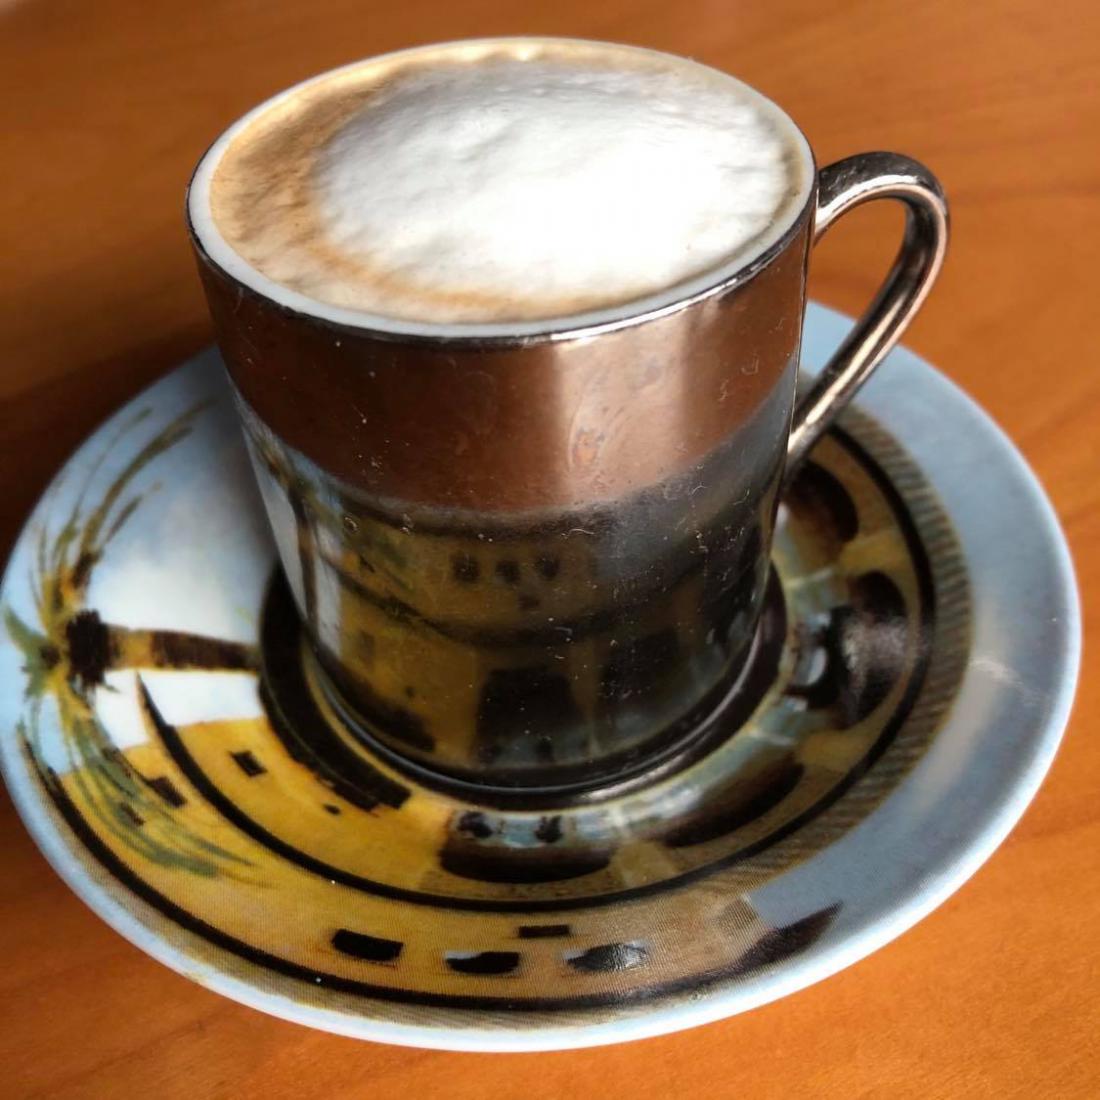 Gogina jutranja kavica- macchiato s spominom na Alhambro iz Granade.